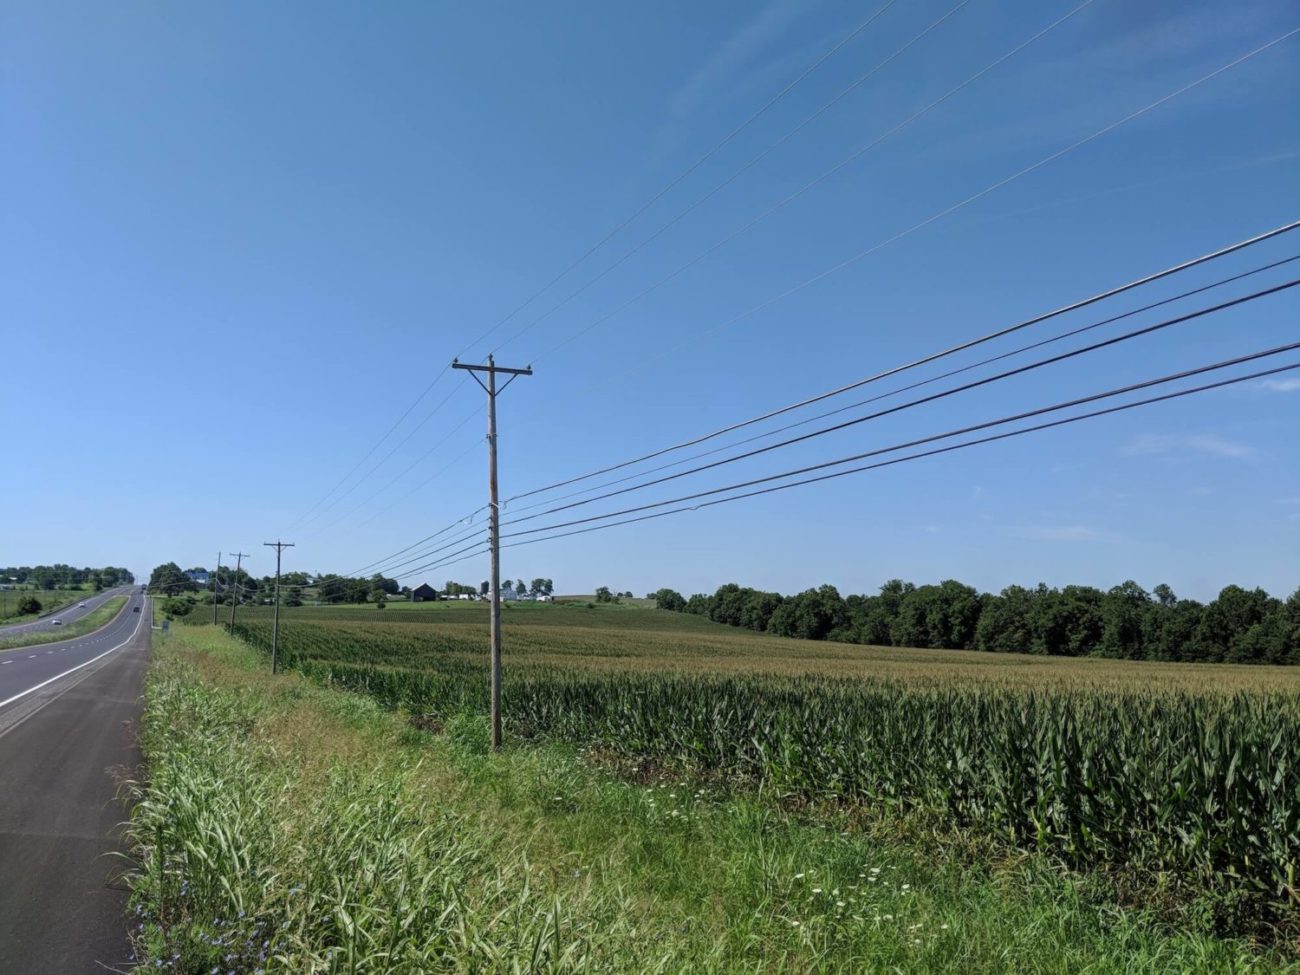 Harrodsburg corn field